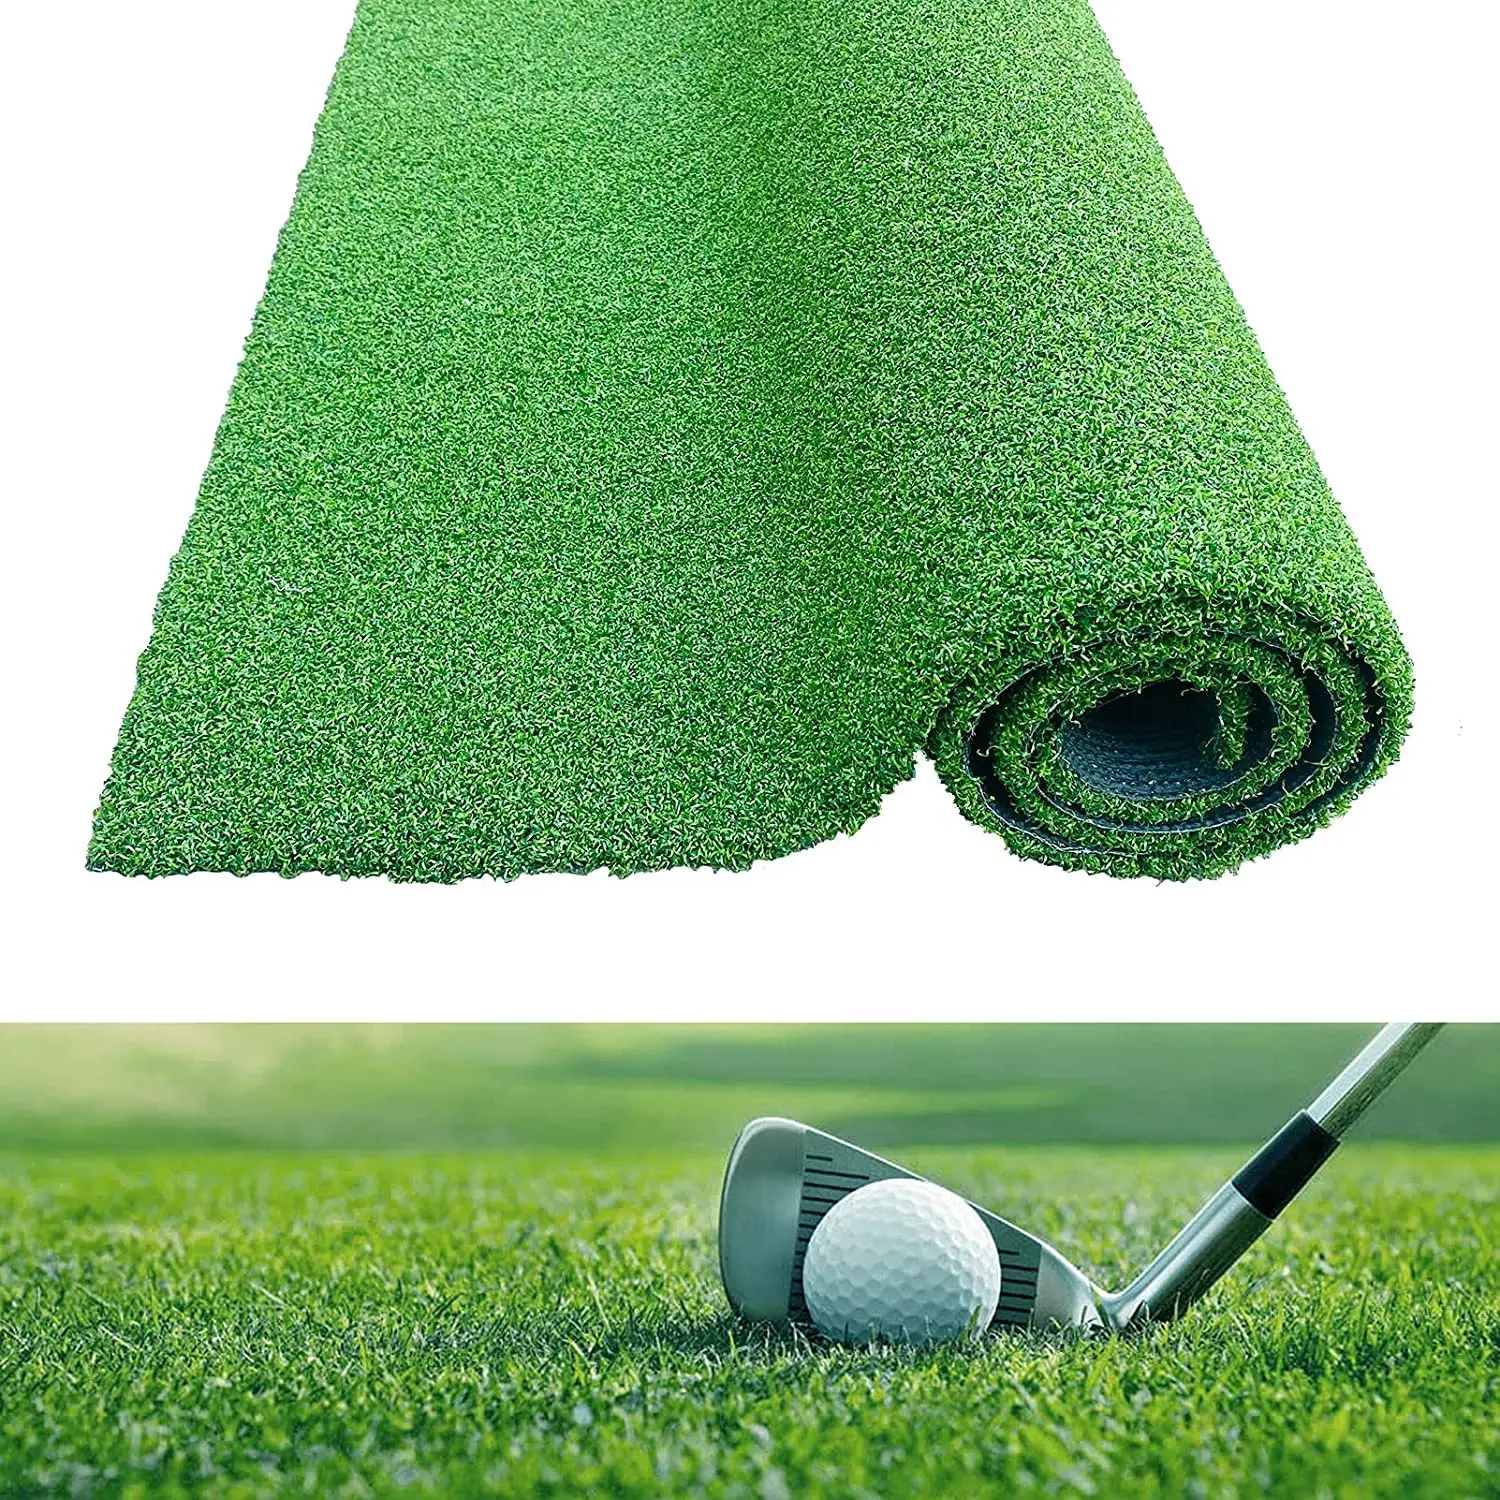 Soccer Golf Cheap Artificial Grass Sports Flooring Putting Green Artificial Grass for Cricket Field